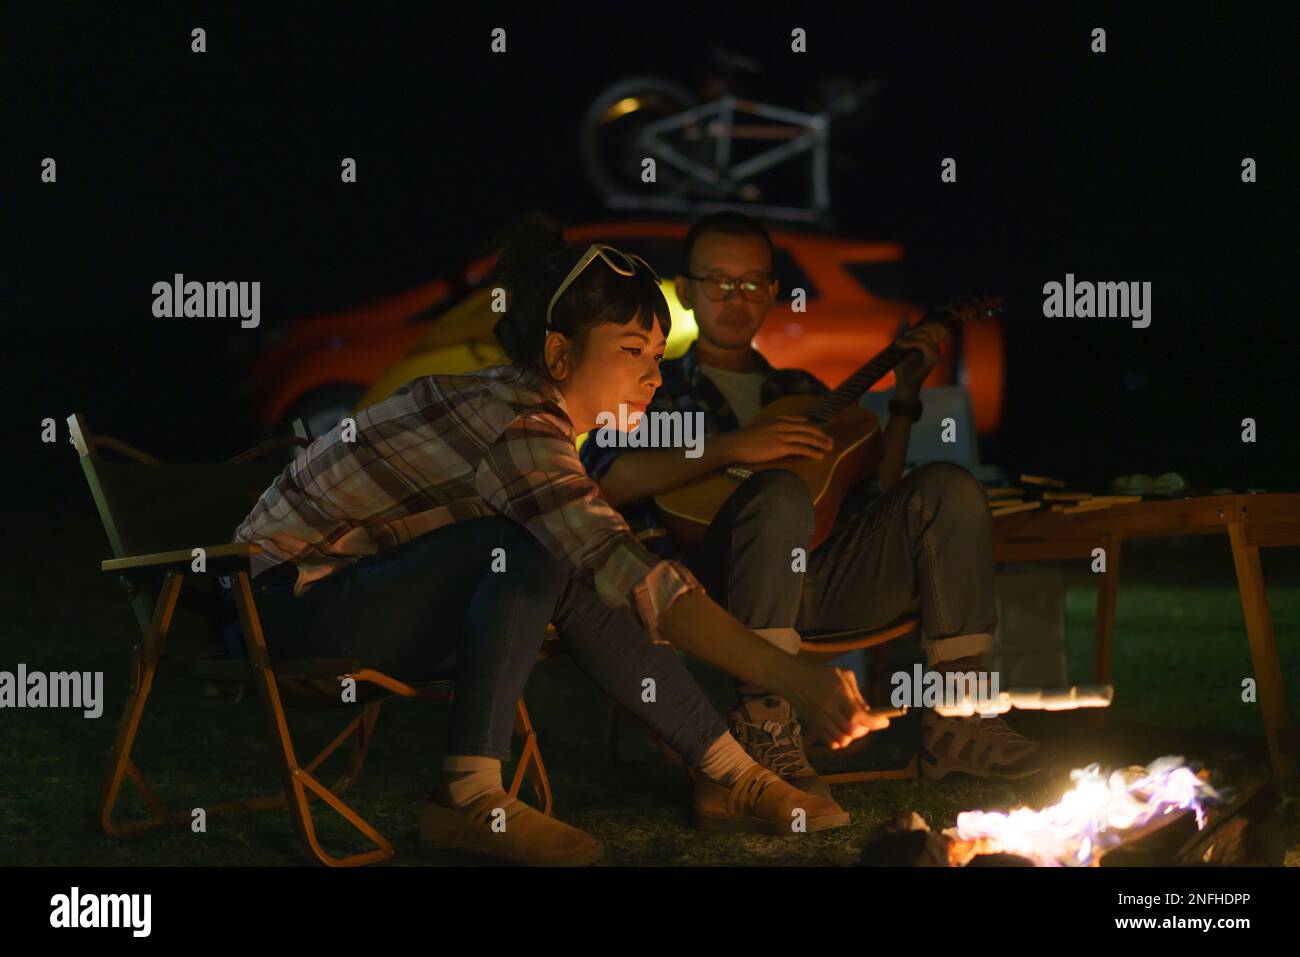 Femme asiatique en train de griller des guimauves tandis que son petit ami joue de la guitare au feu de camp où ils ont installé leurs tentes pour camper au bord du lac la nuit. Banque D'Images